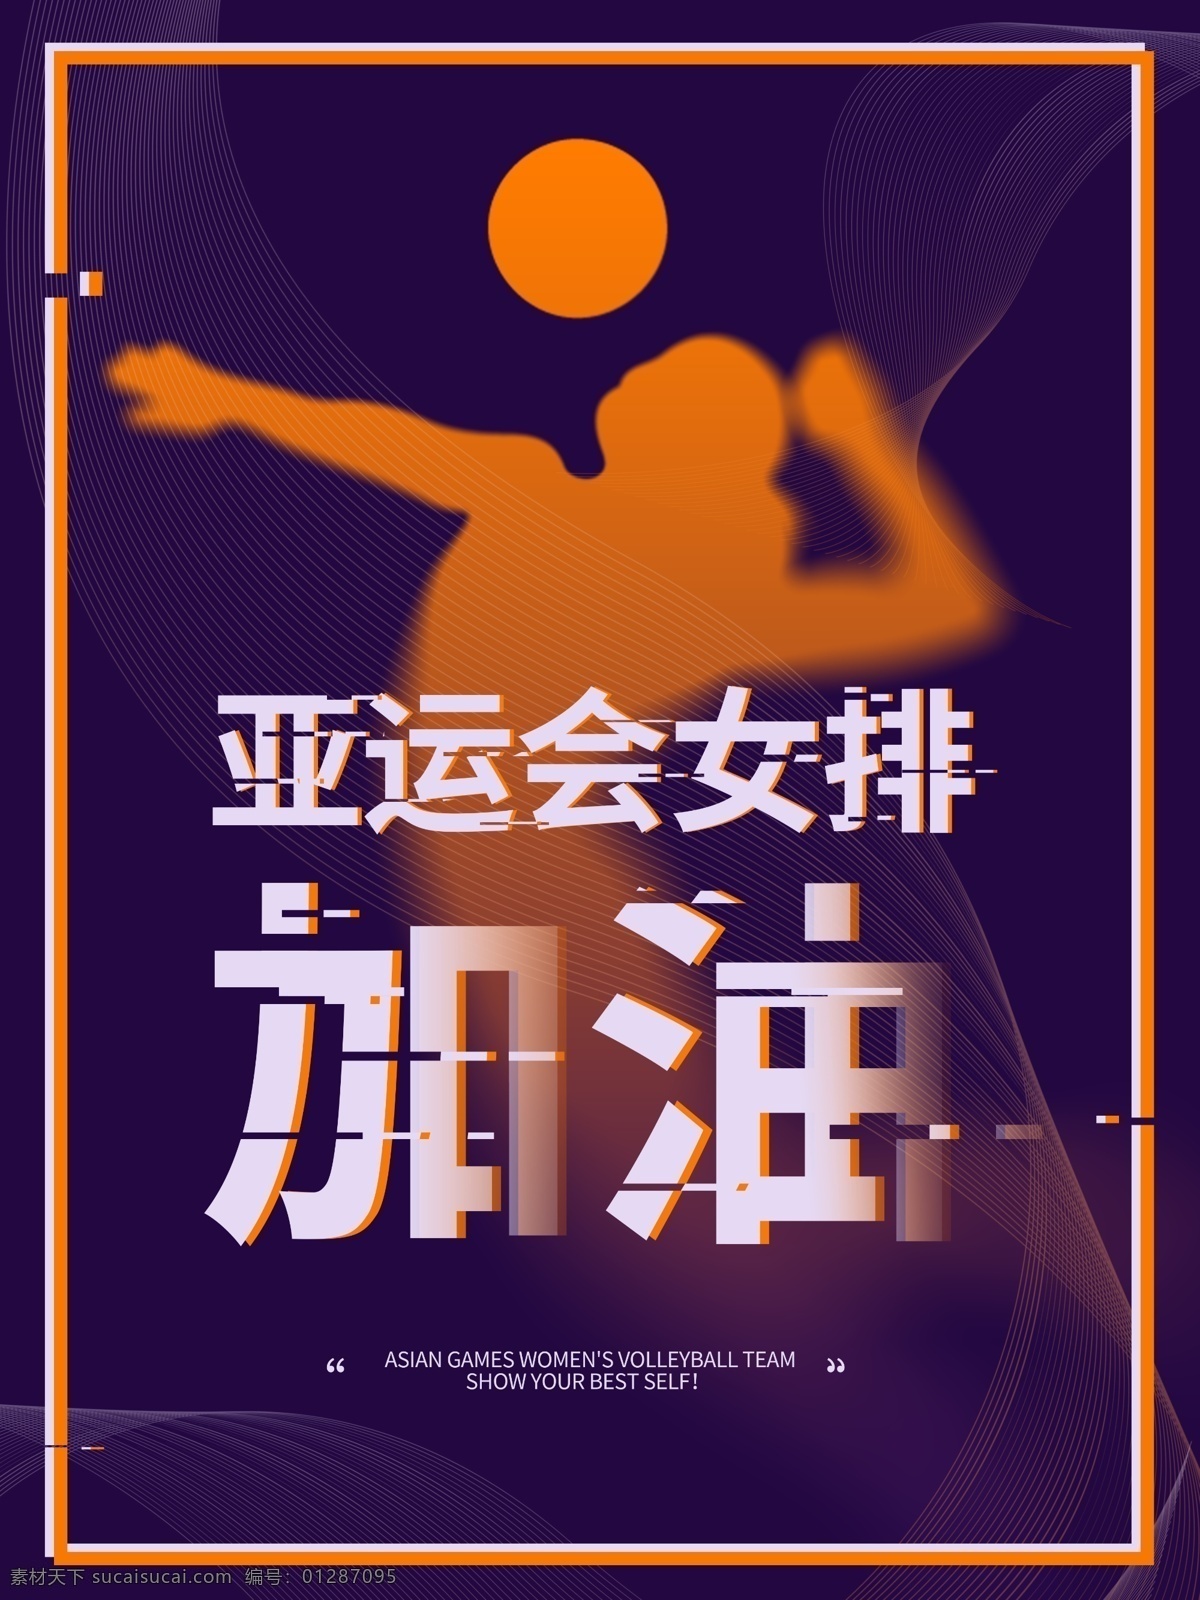 深 紫色 亚运会 女排 加油 海报 运动会 圆形 比赛 励志 奥运会 中国队 橙黄色 女人 排球 跳跃 打球 球类 竞技 赛事 2018 八月 精神 奋斗 火热